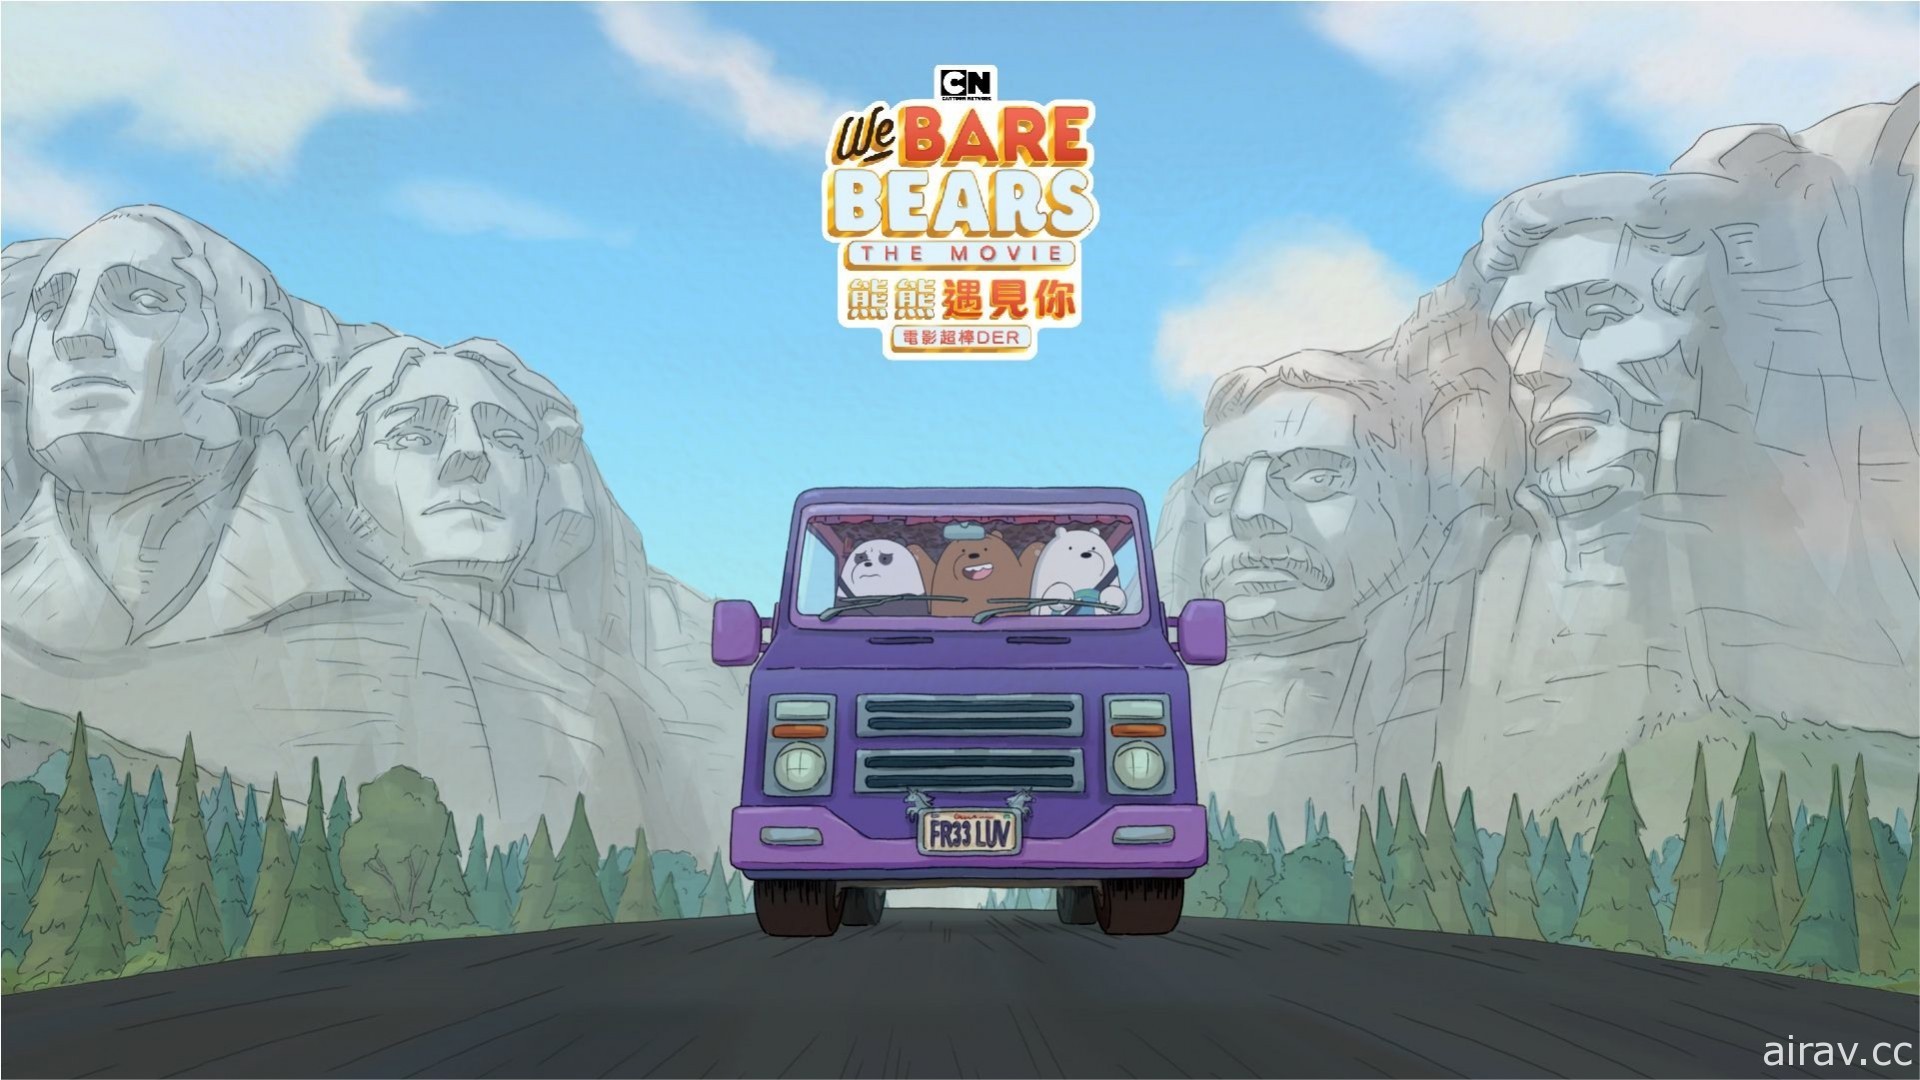 卡通頻道《熊熊遇見你電影超棒 DER》9 月 12 日於 HBO GO 上線 首次公開熊熊兄弟的初識